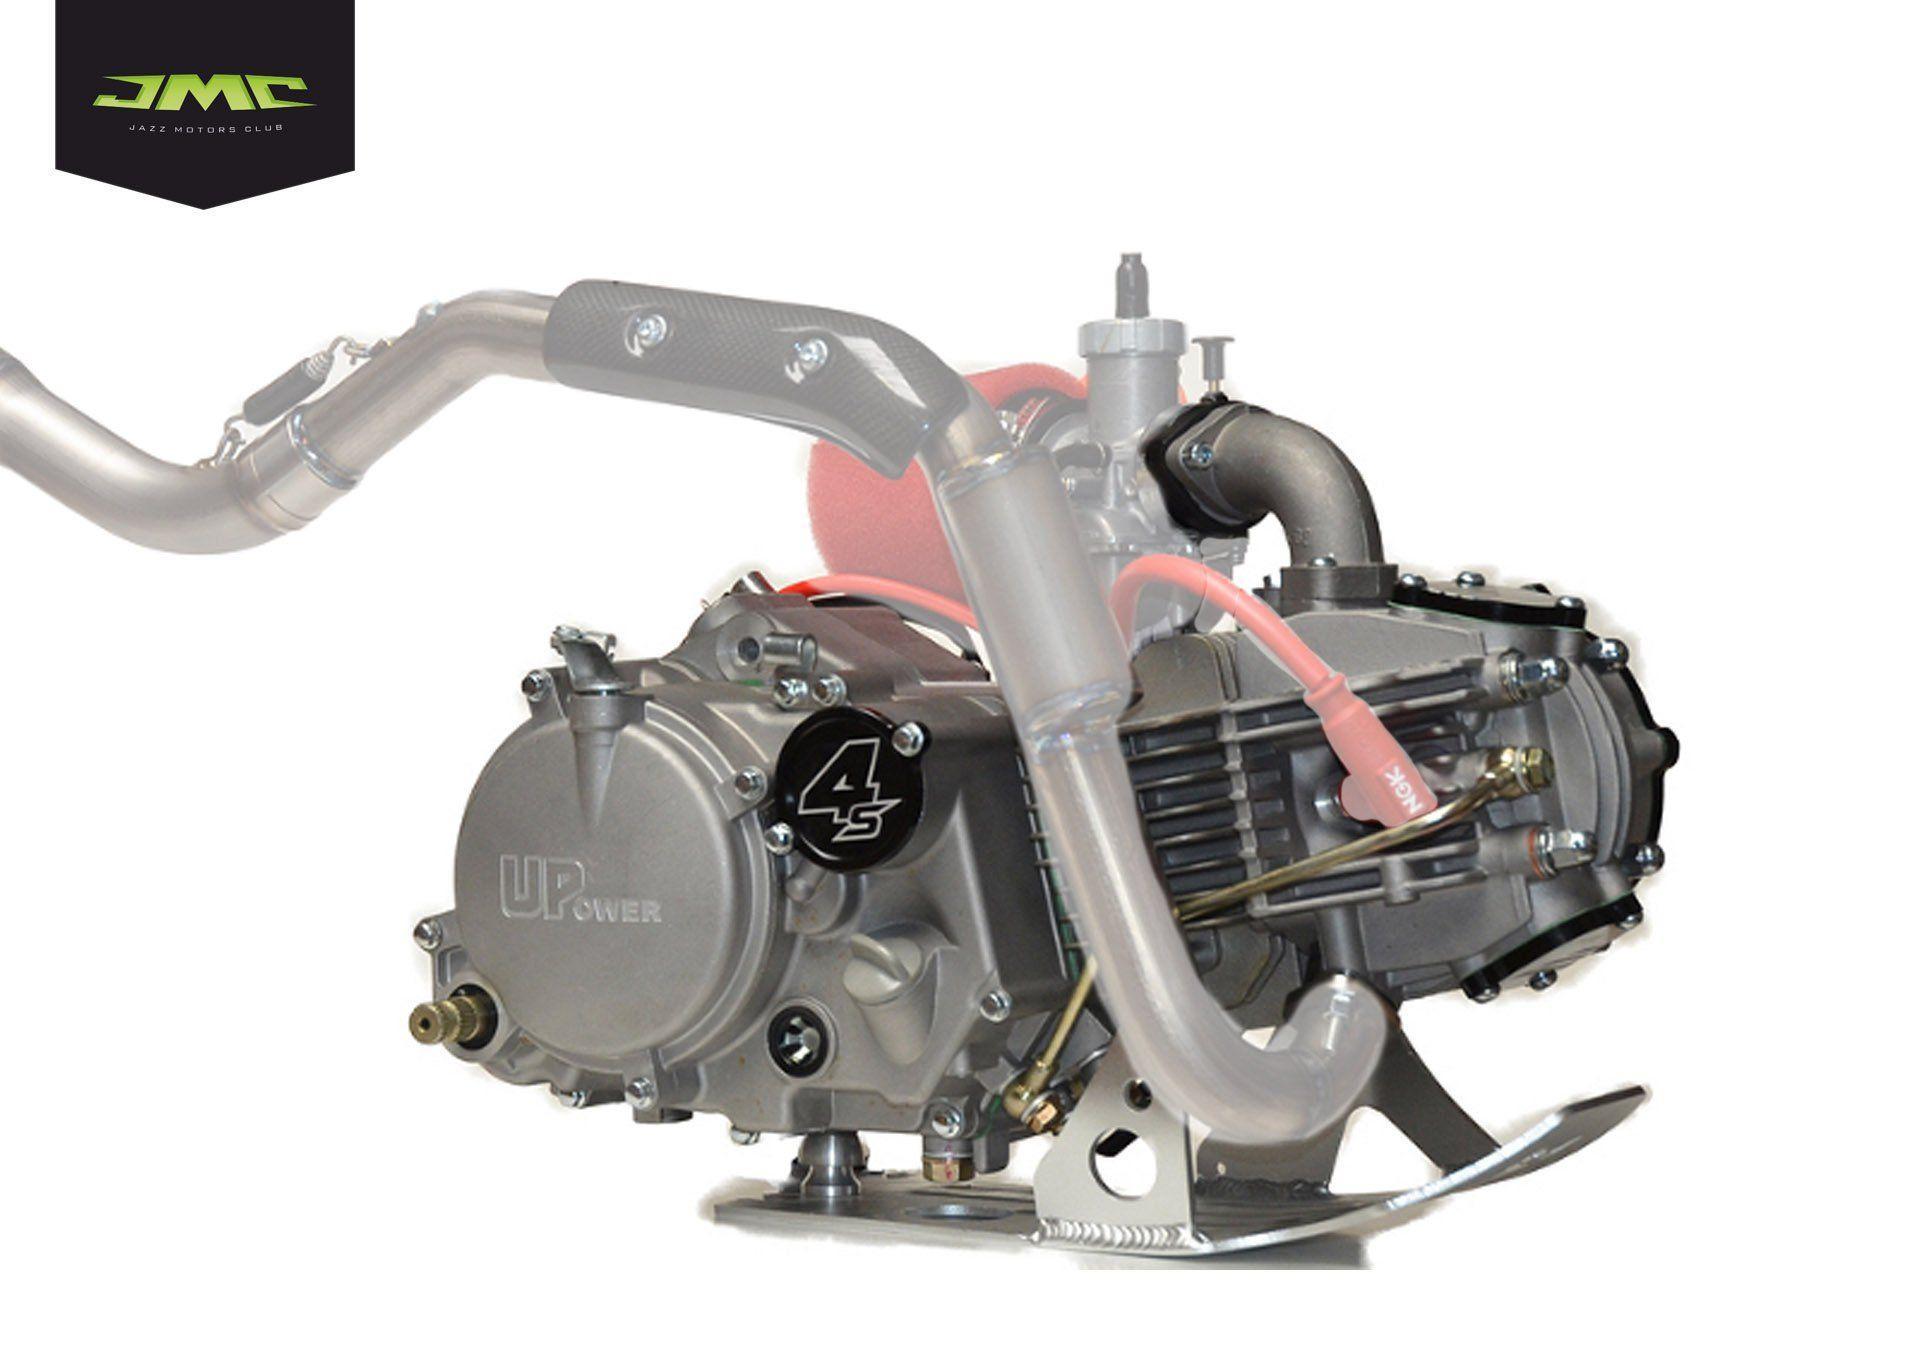 Двигатель Upower 150cc 4S в сборе (проводка+коммутатор)